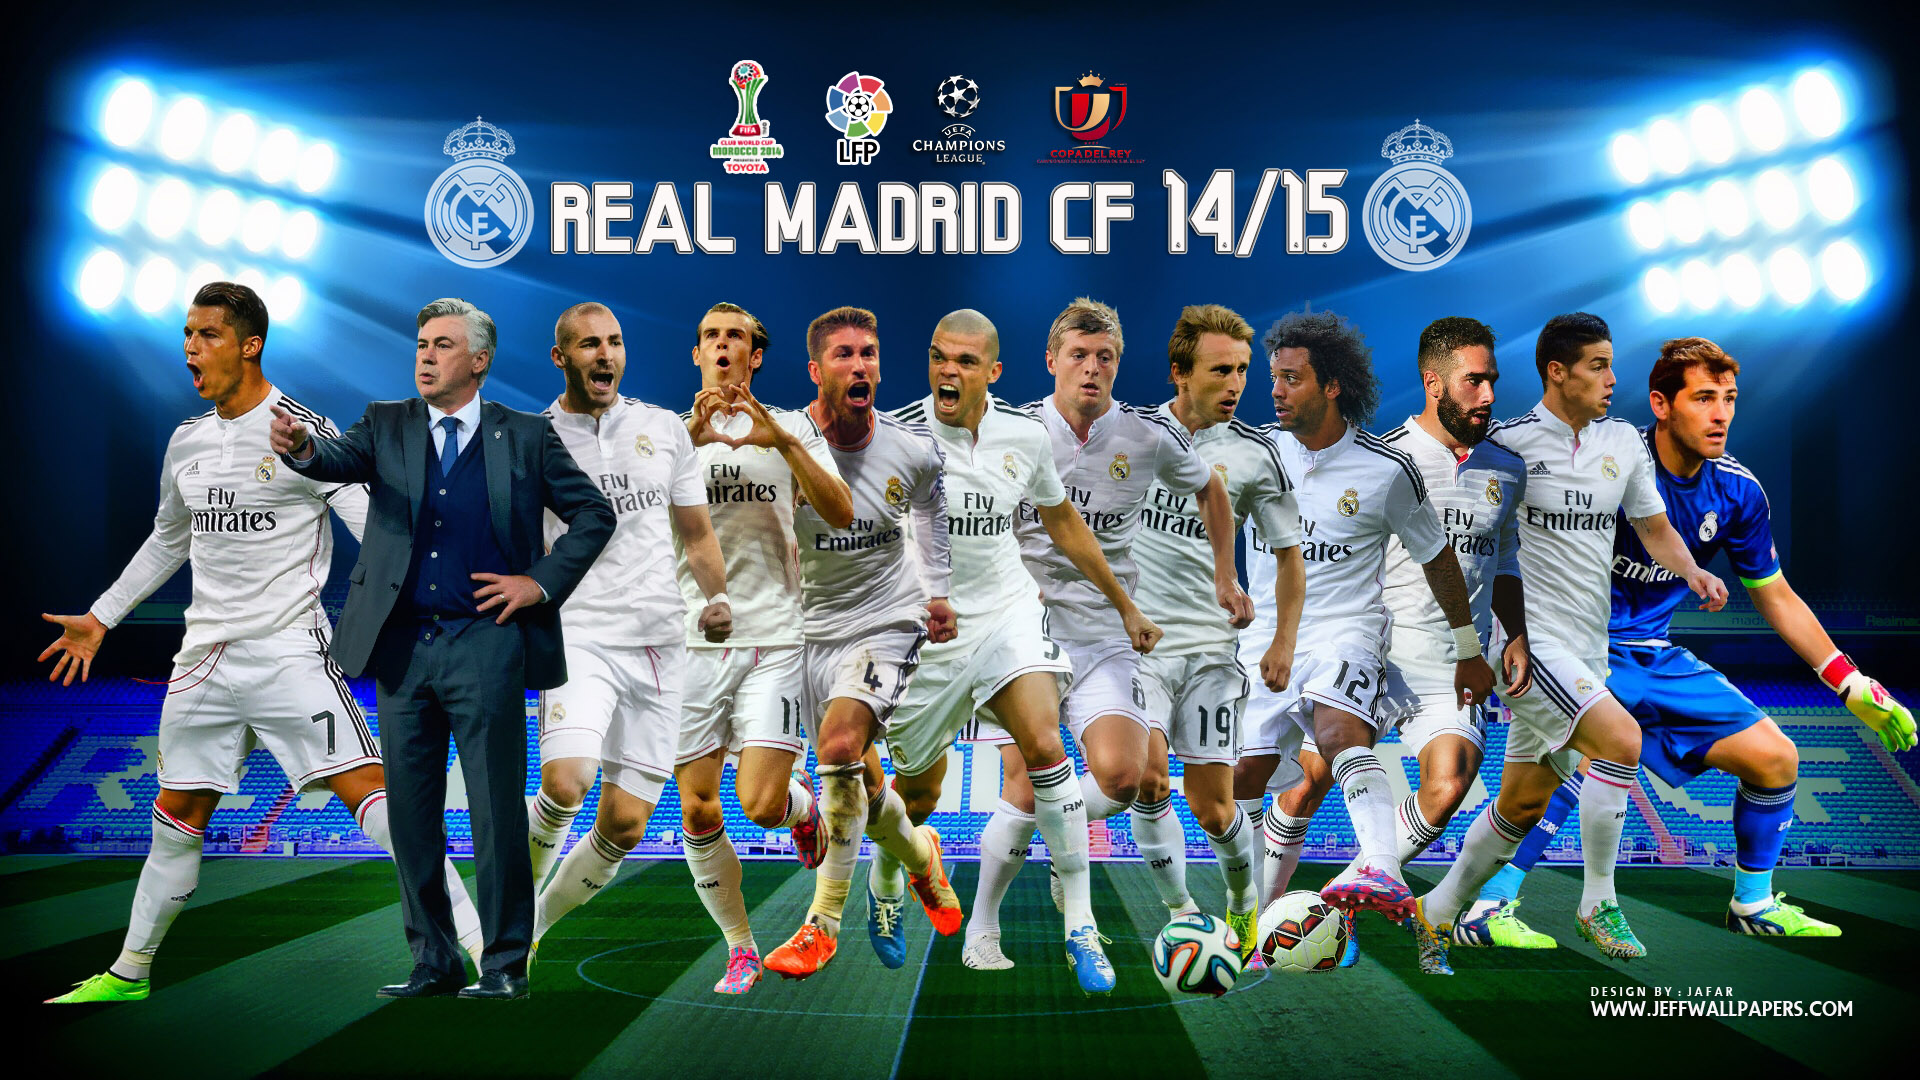 Real Madrid Celebrating Wallpapers Hd 2015 WallpaperSafari